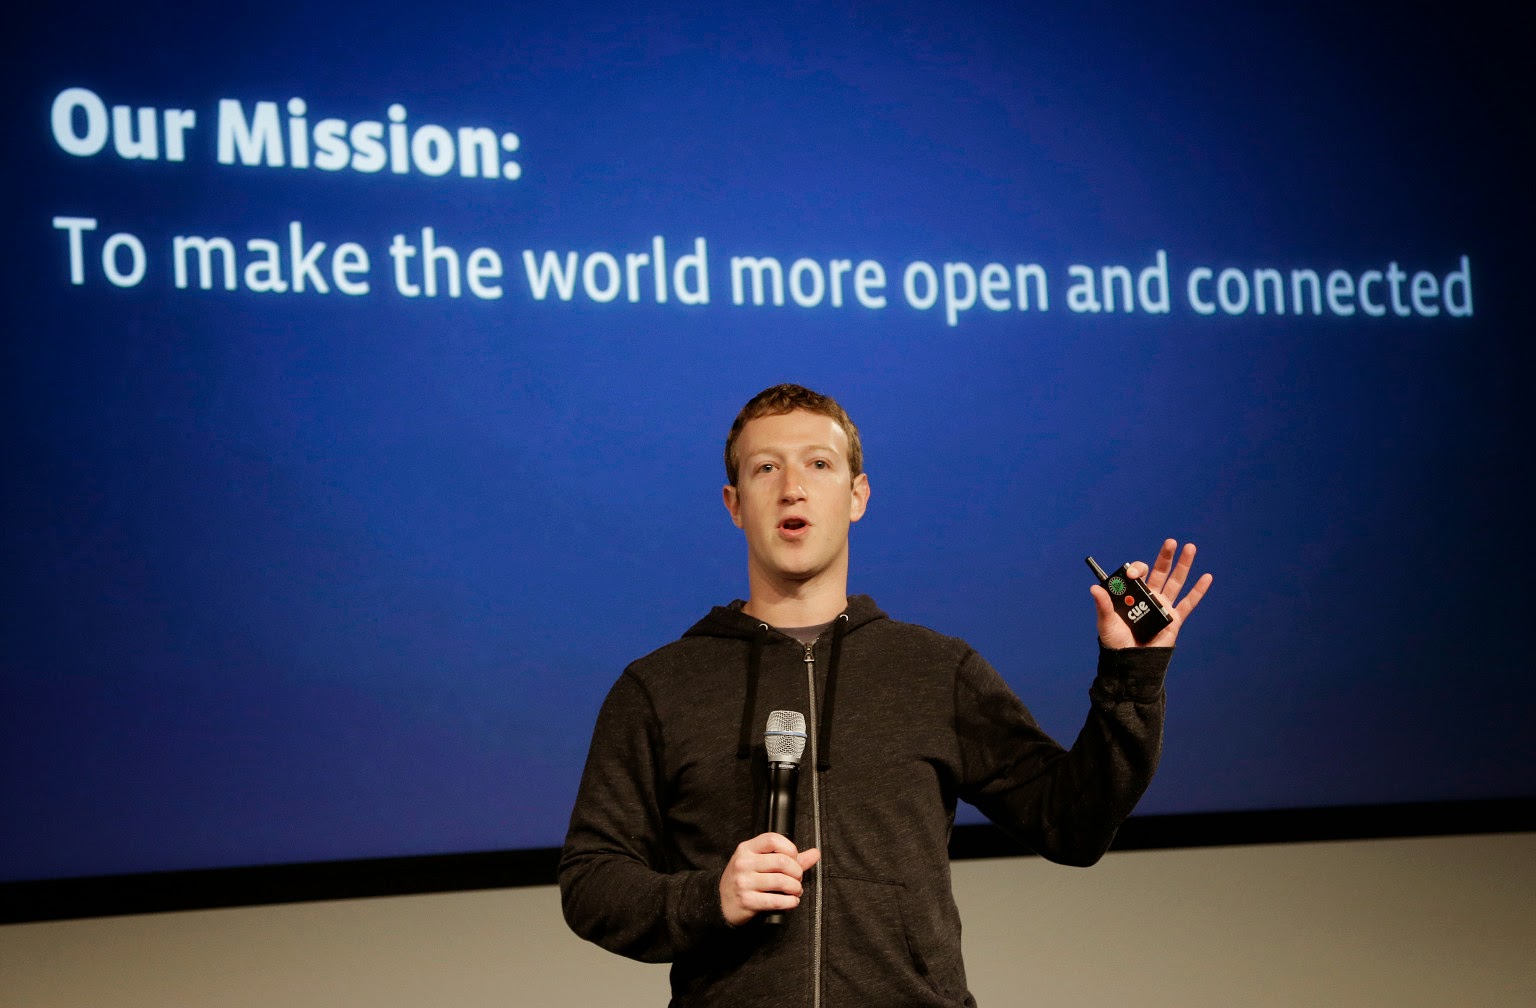 بعد اتهامها بالاحتكار، فيسبوك تعلن عن خطوتها الجديدة في مشروع الإنترنيت المجاني 